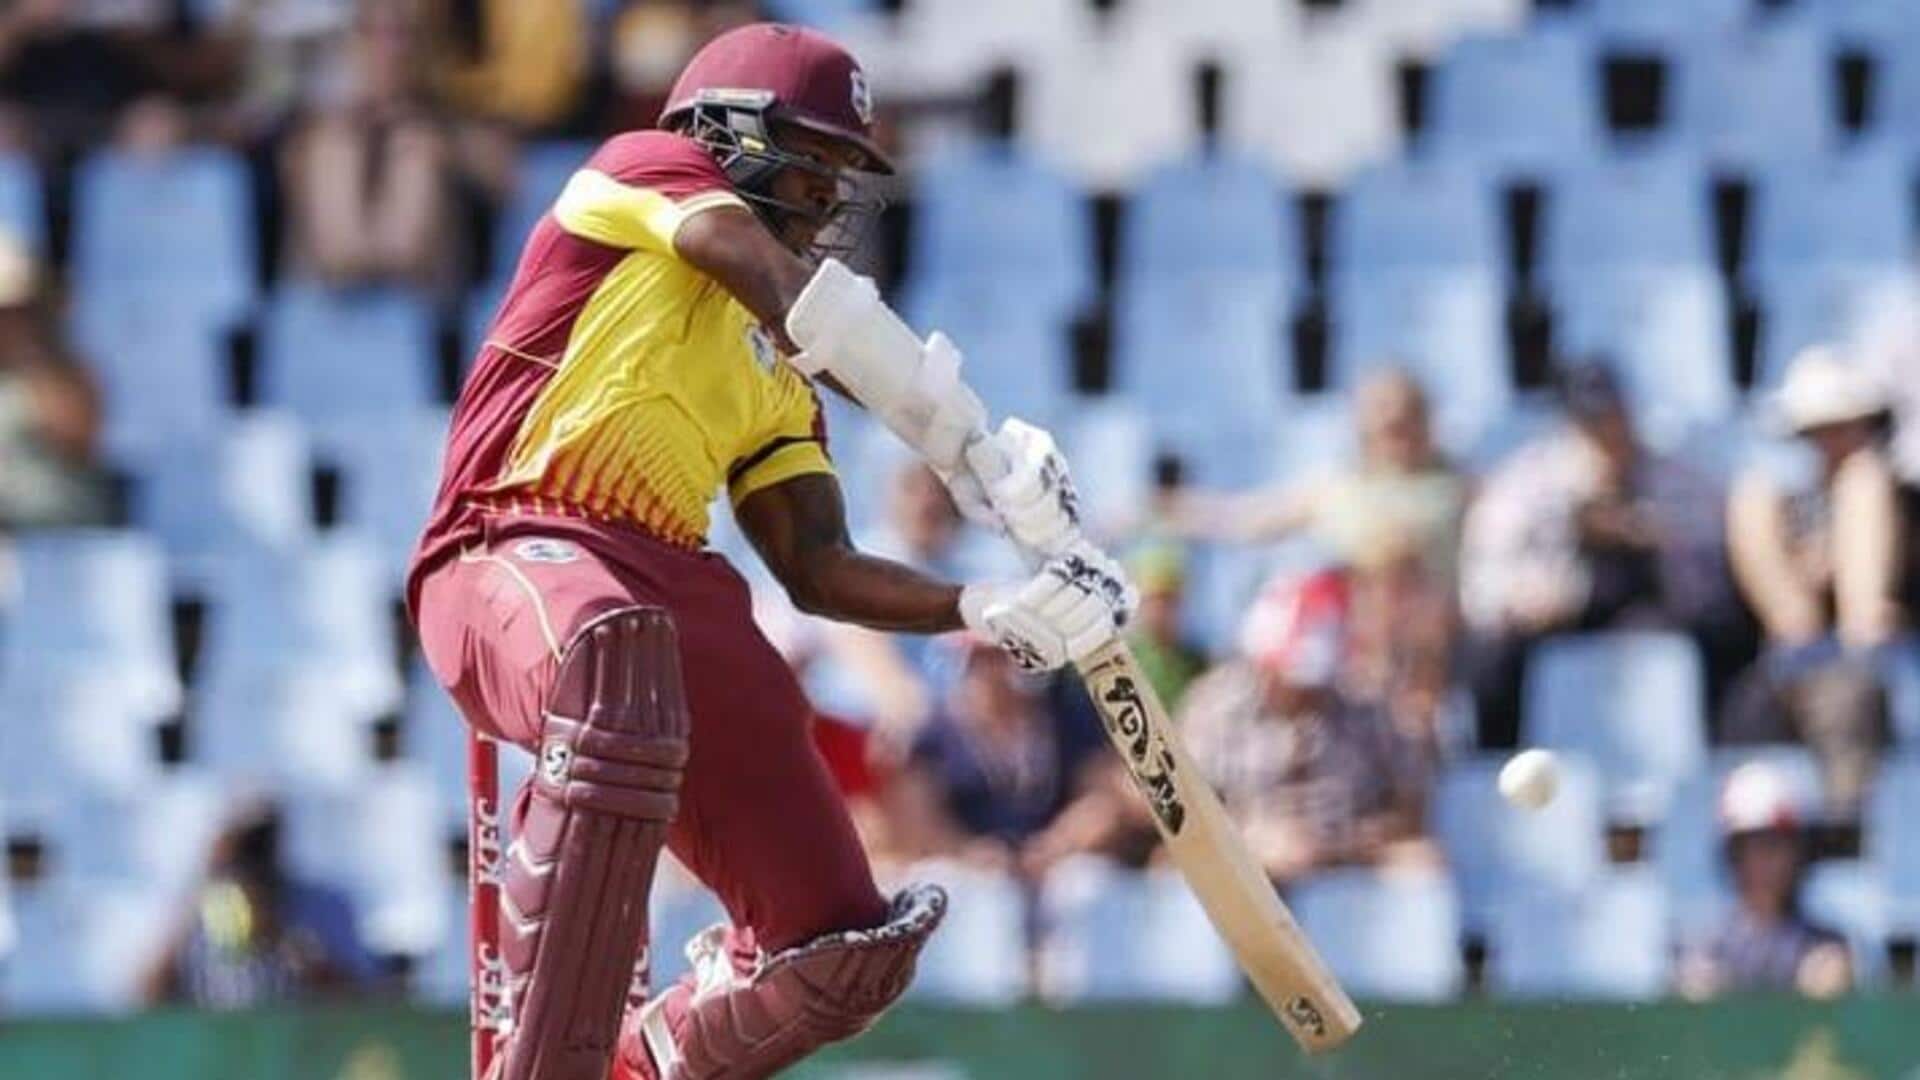 जिम्बाब्वे बनाम वेस्टइंडीज: काइल मेयर्स ने लगाया वनडे करियर का दूसरा अर्धशतक, जानिए उनके आंकड़े